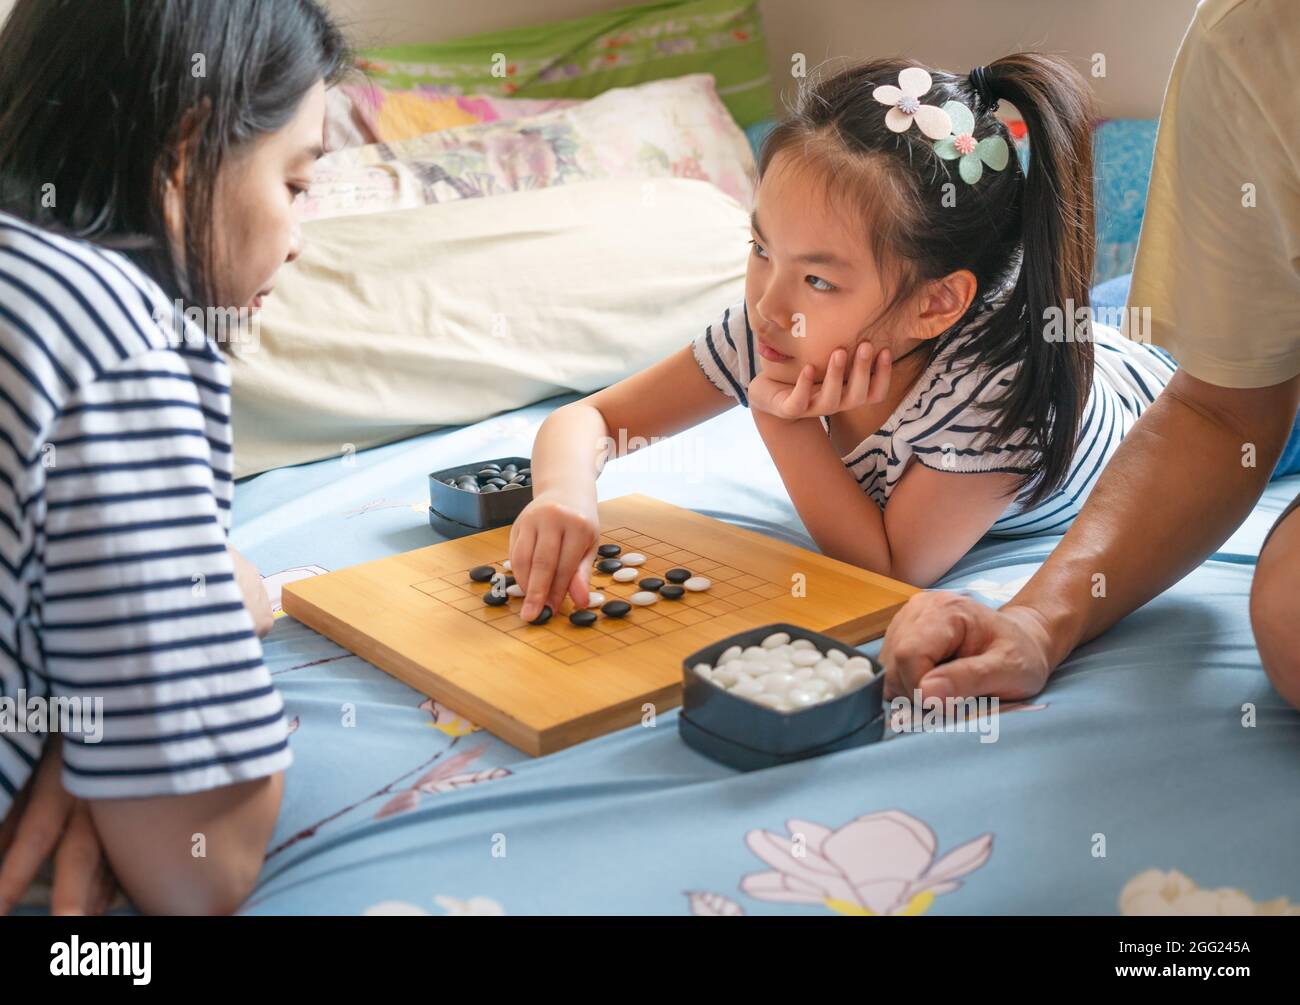 Asiatische niedliche Kind Mädchen spielen Go oder chinesische traditionelle Brettspiel auf dem Bett mit der Mutter, verwenden Sie schwarze und weiße Steine zu spielen, Mädchen suchen Gegner Gesicht. Stockfoto